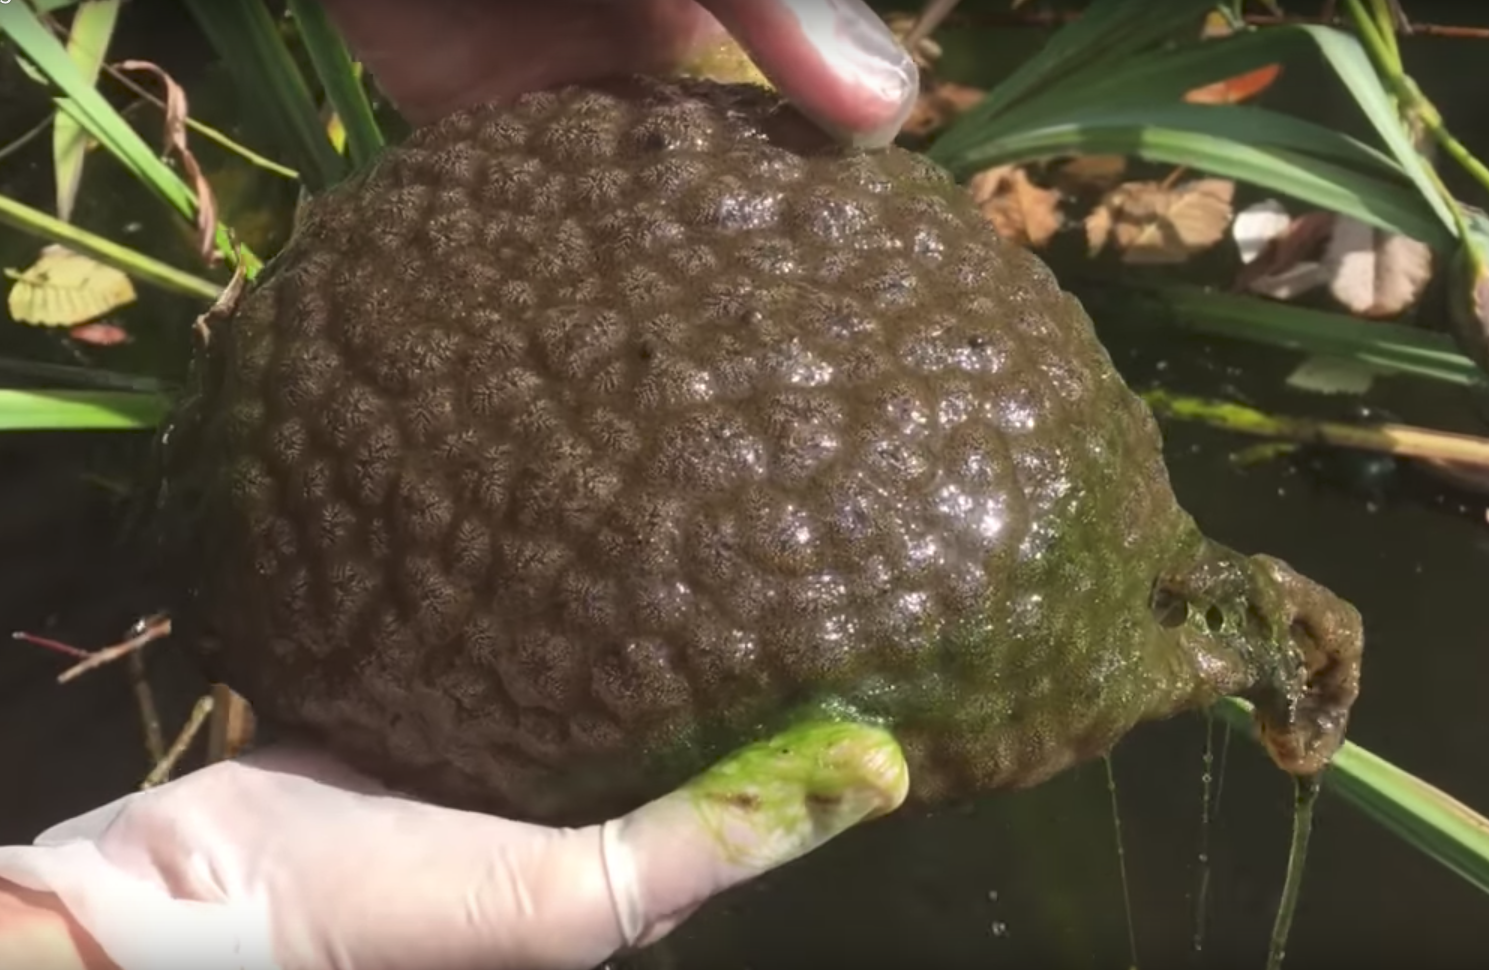 Brain-like Blob Found in Canadian Pond | Smart News| Smithsonian Magazine